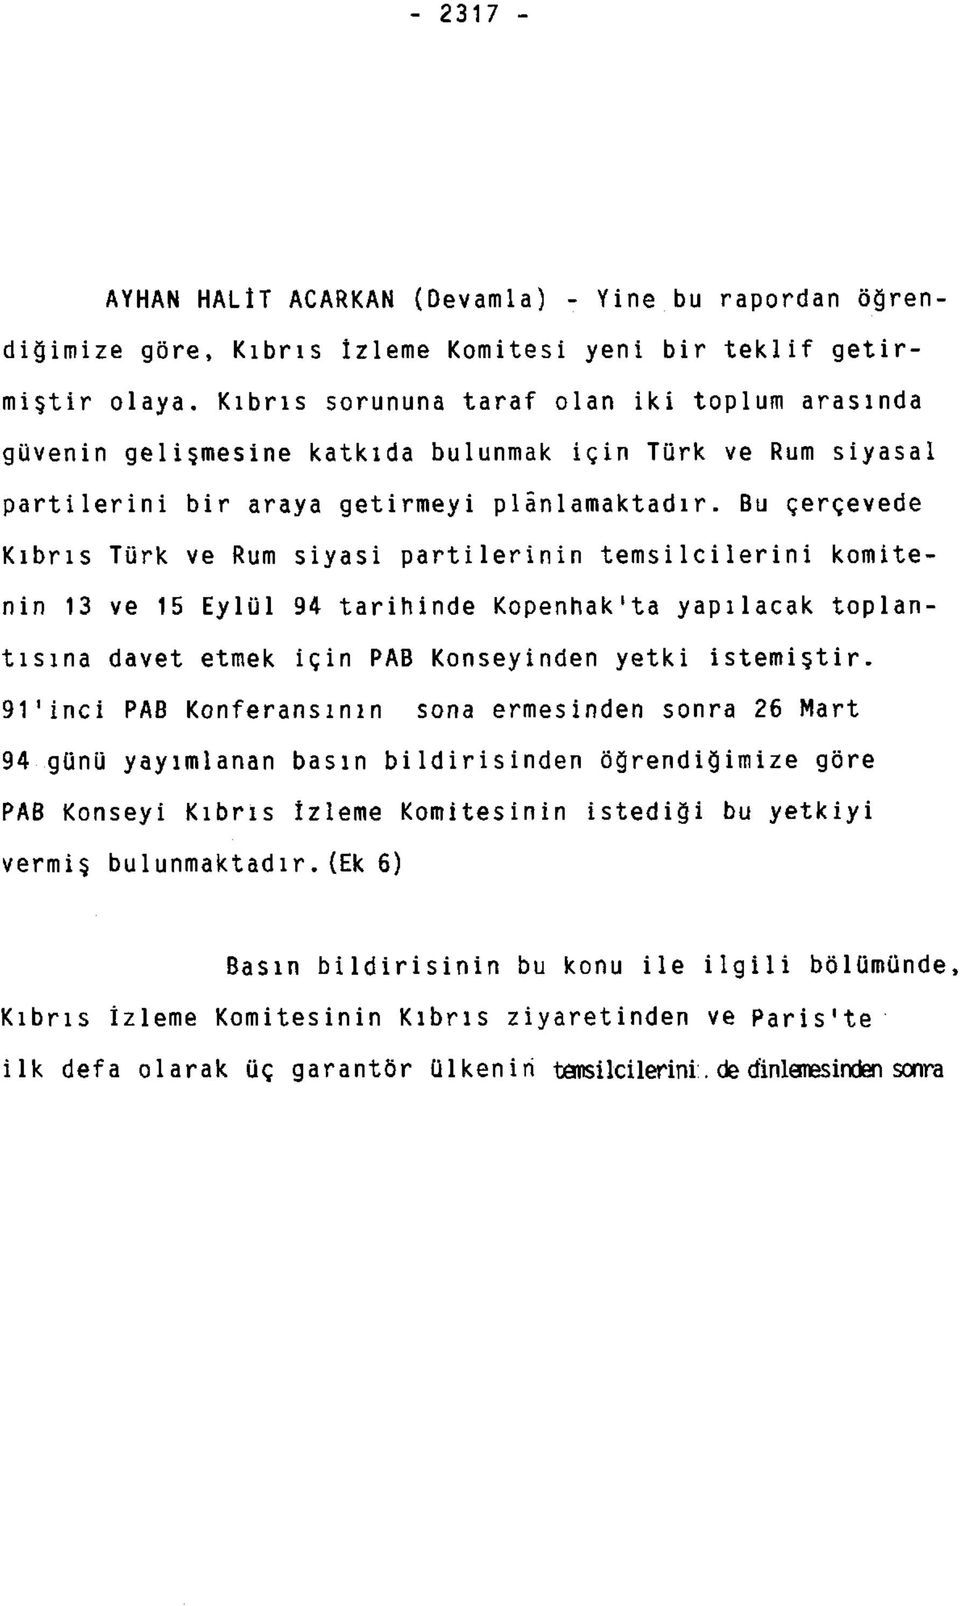 Bu çerçevede Kıbrıs Türk ve Rum siyasi partilerinin temsilcilerini komitenin 13 ve 15 Eylül 94 tarihinde Kopenhak'ta yapılacak toplantısına davet etmek için PAB Konseyinden yetki istemiştir.